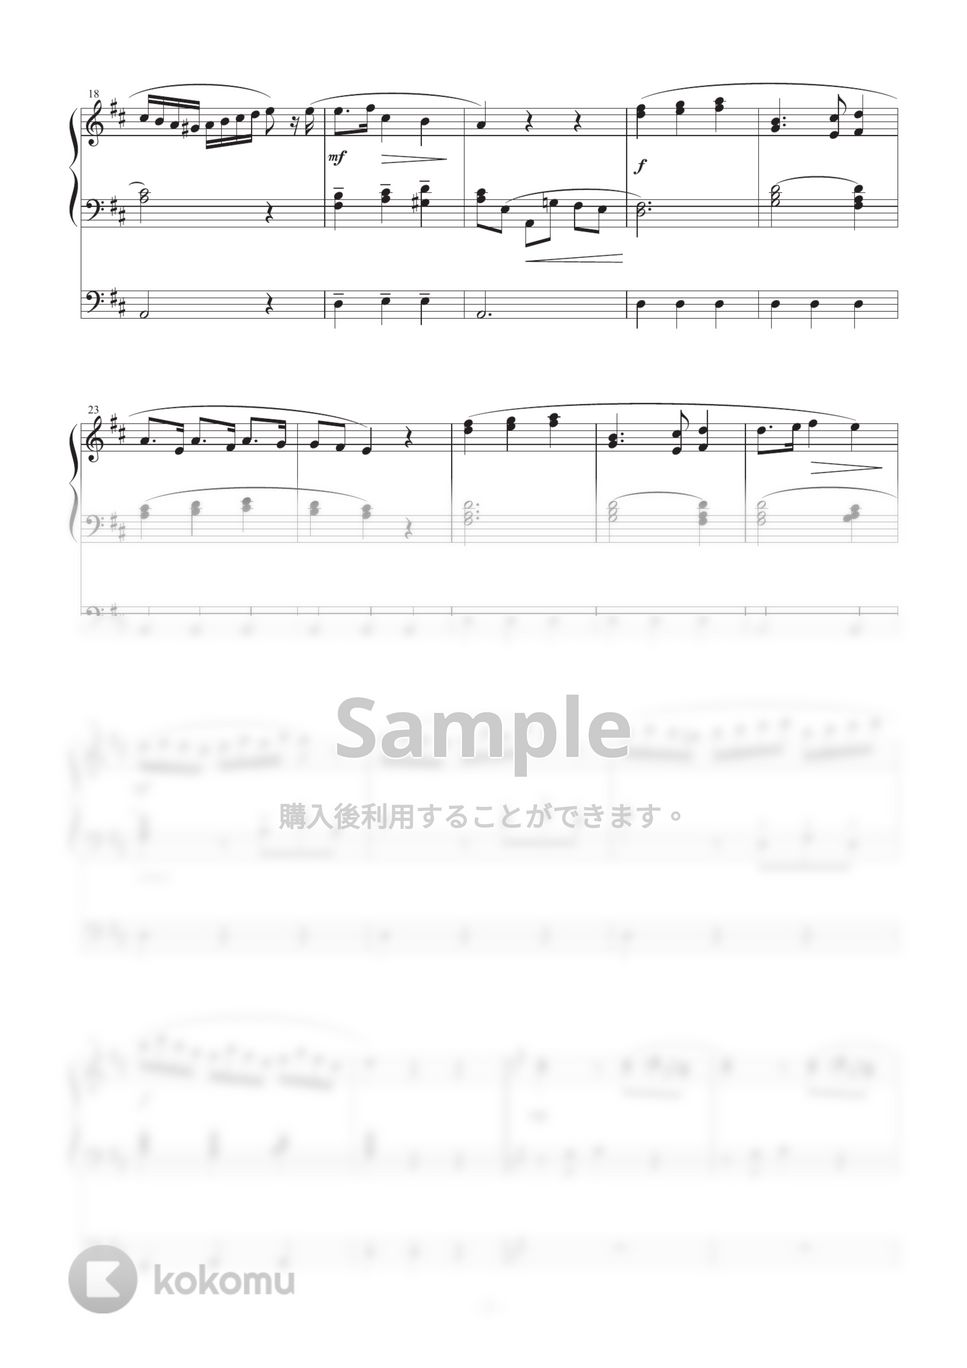 クレメンティ - sonatine op.37-2 第２楽章 (電子オルガン　オーケストラアレンジ) by kyon